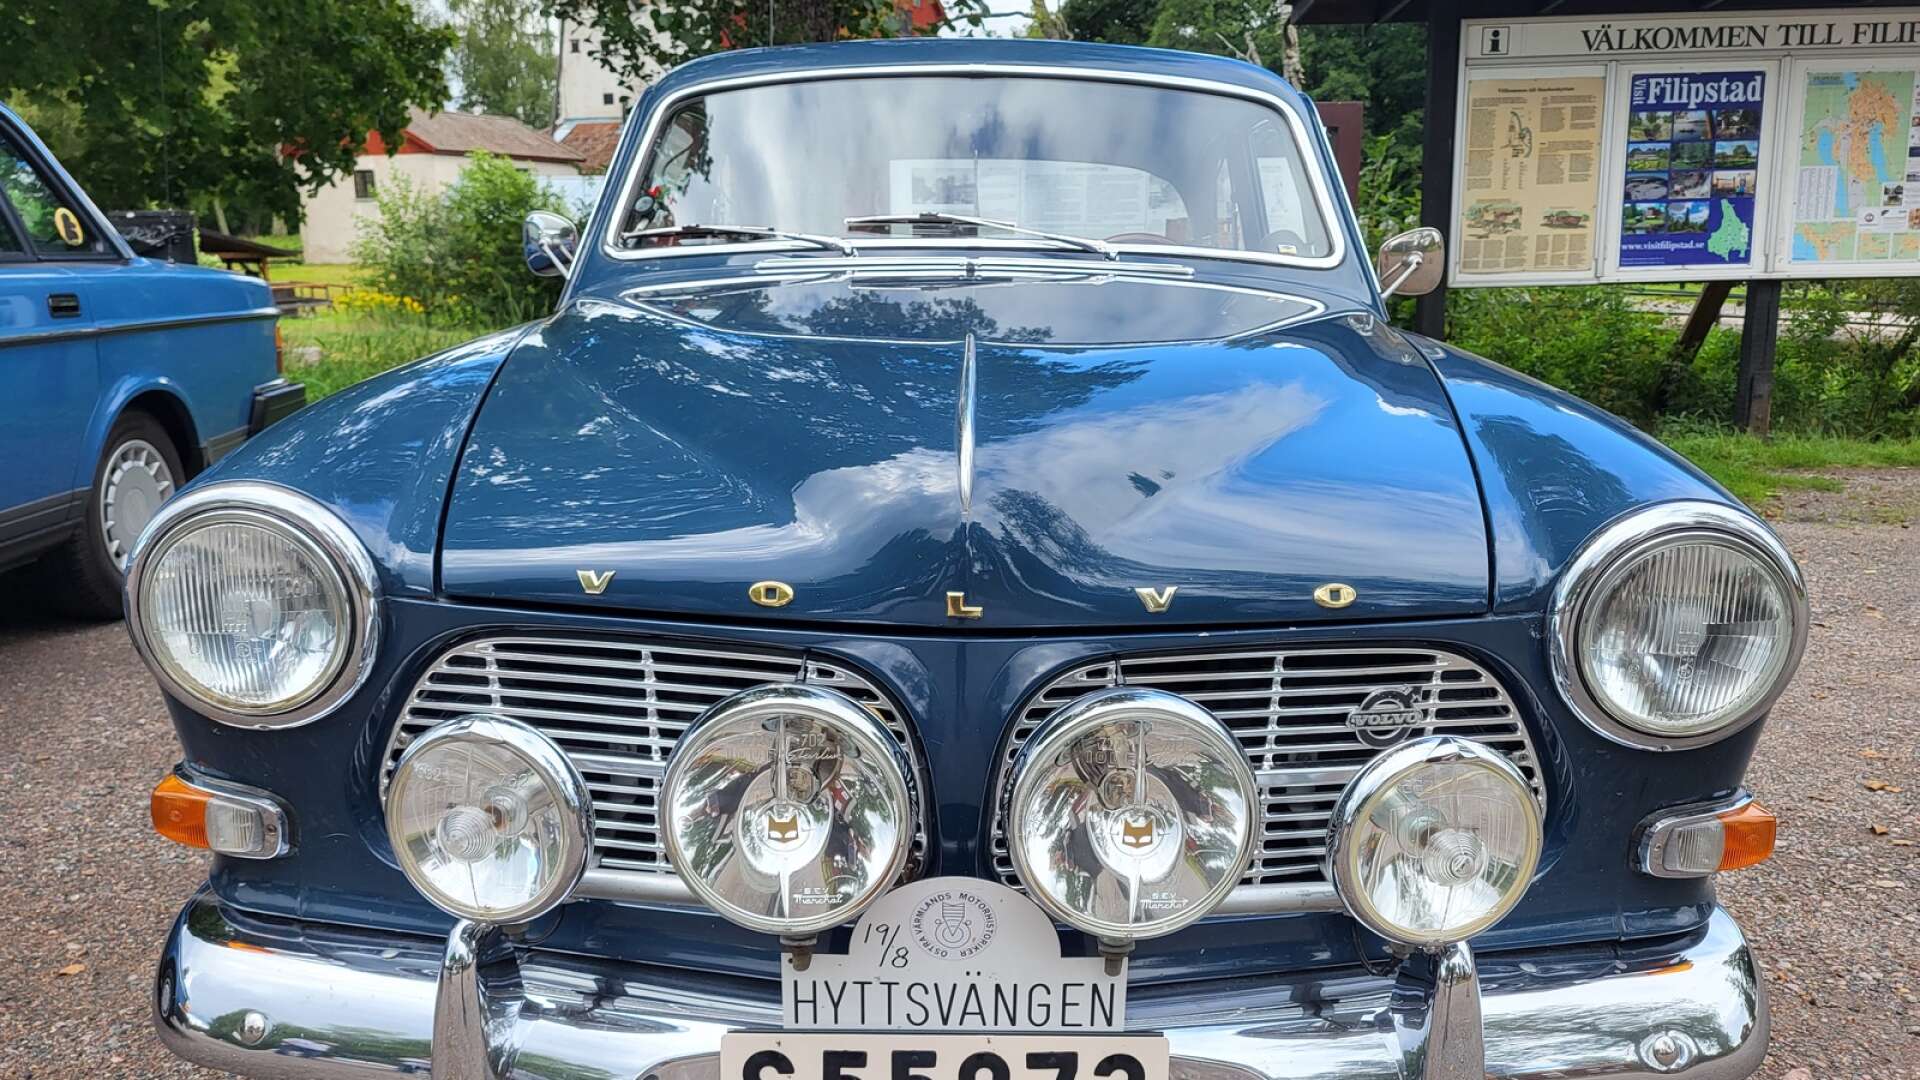 Östra Värmlands Motorhistoriker arrangerar åter veteranrallyt Hyttsvängen lördagen den 19 augusti. Lennart Carlssons glänsande blåa Amazon årsmodell 1966, är naturligtvis med i startfältet. 